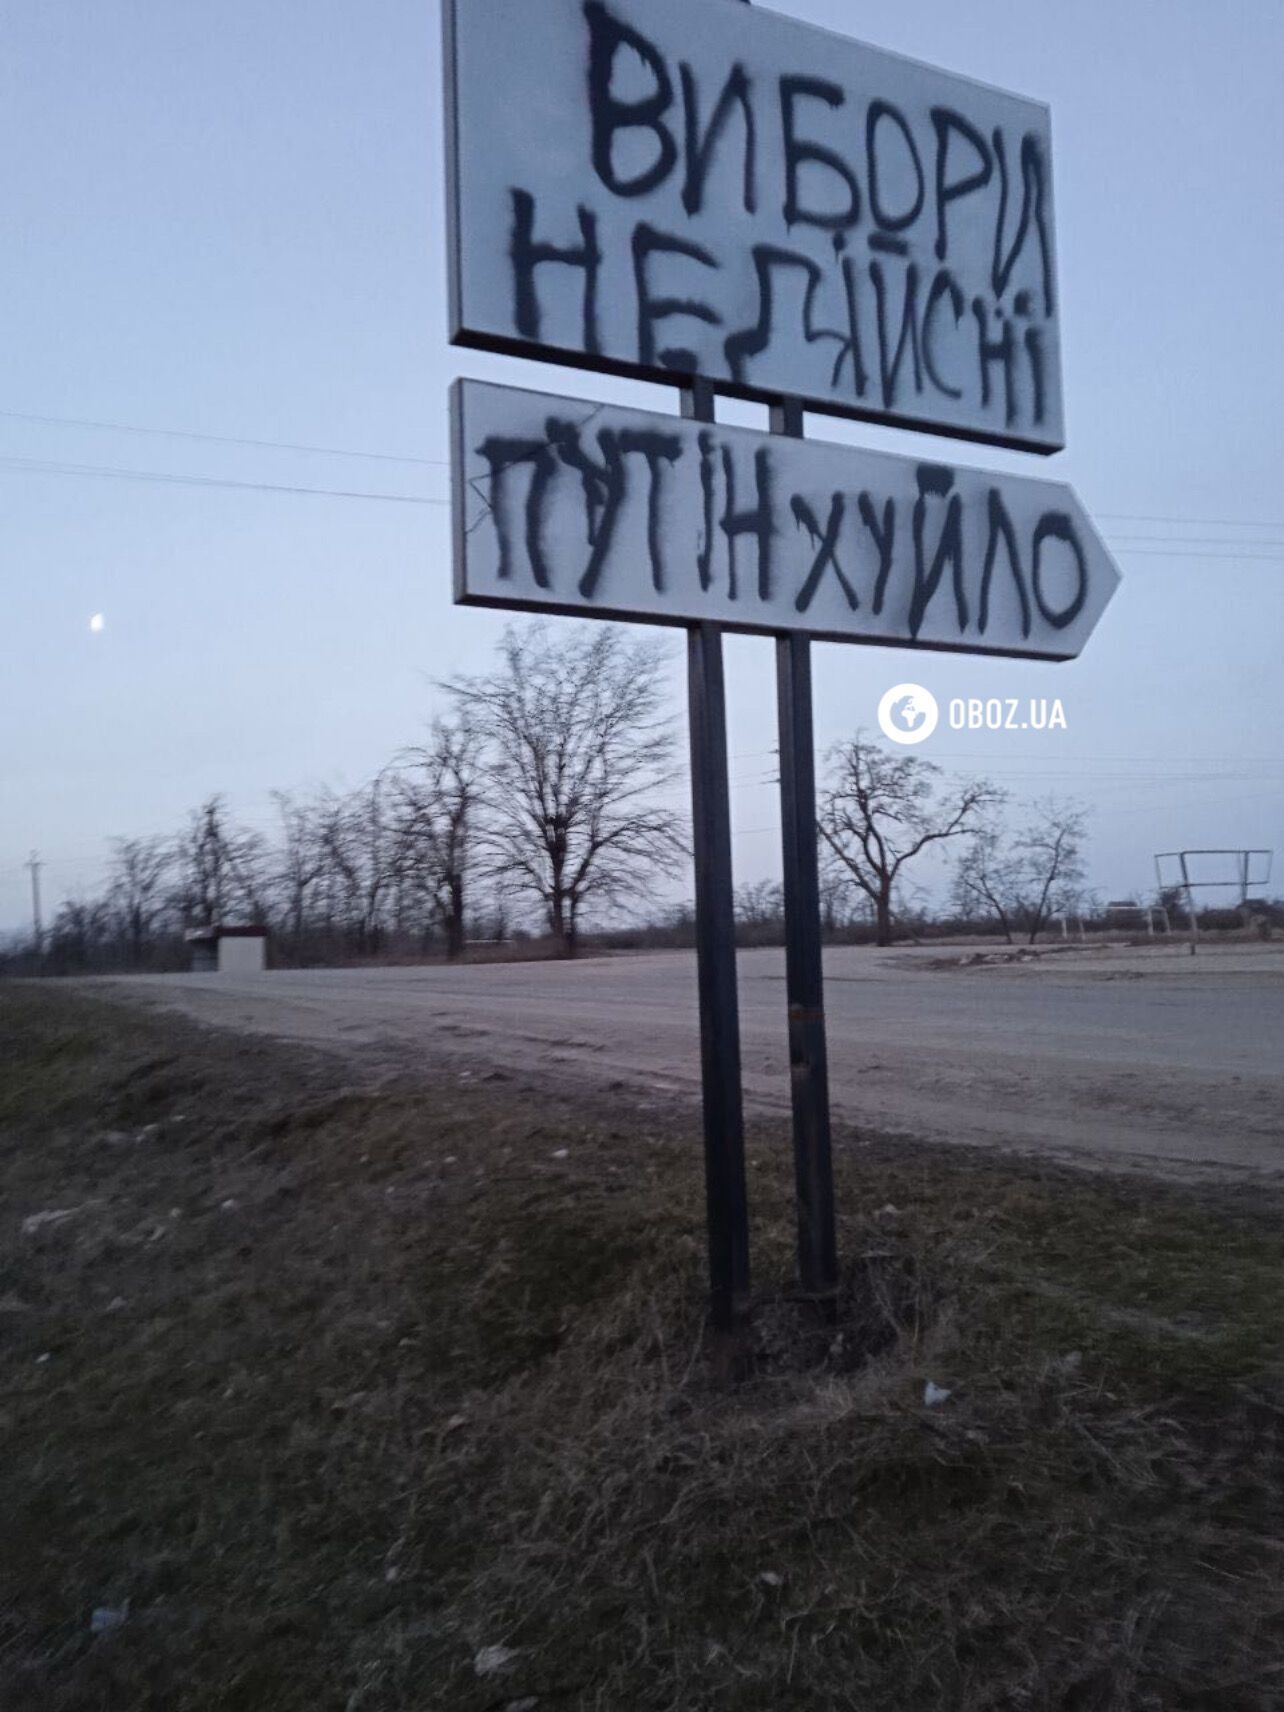 "ПТН ПНХ": в России и на оккупированных территориях массово появляются граффити против выборов Путина. Фото и видео